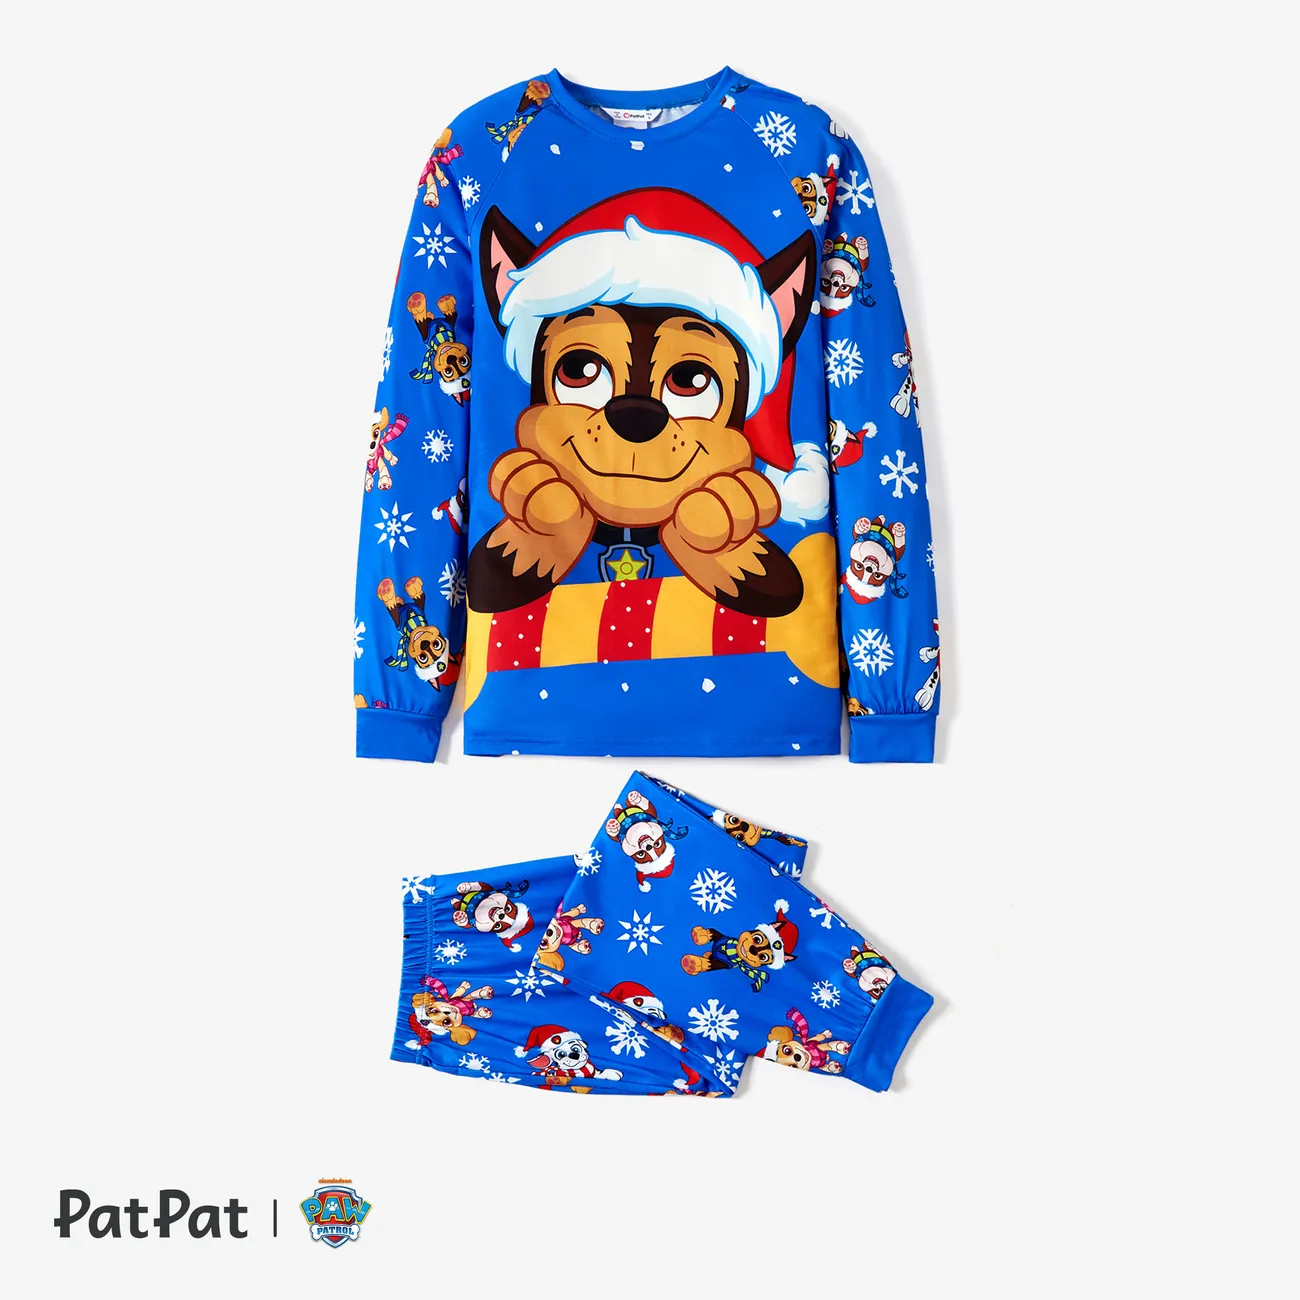 La Pat’ Patrouille Noël Look Familial Manches longues Tenues de famille assorties Pyjamas (Flame Resistant) Multicolore big image 1